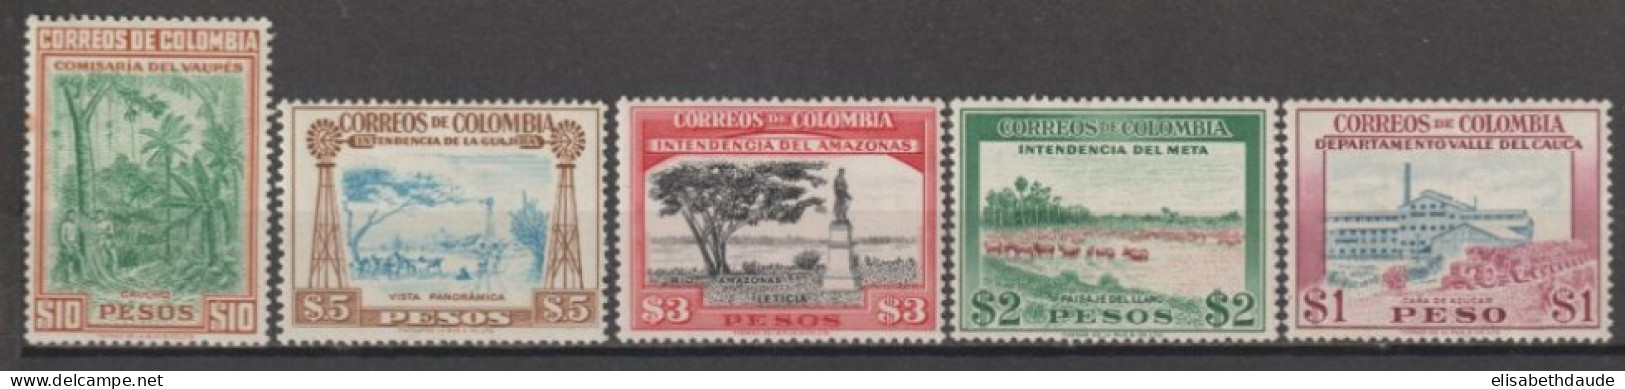 COLOMBIE - 1956 - YVERT N°526/530 ** MNH (526 * MH ET 530 INFIME ROUSSEUR SUR DENT) - COTE = 43.25 EUR. - Colombie